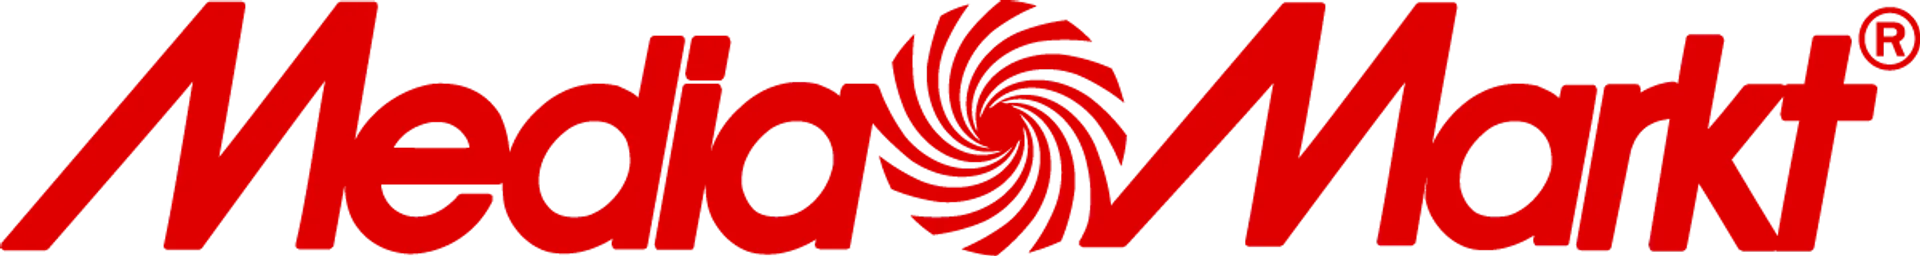 MEDIAMARKT logo